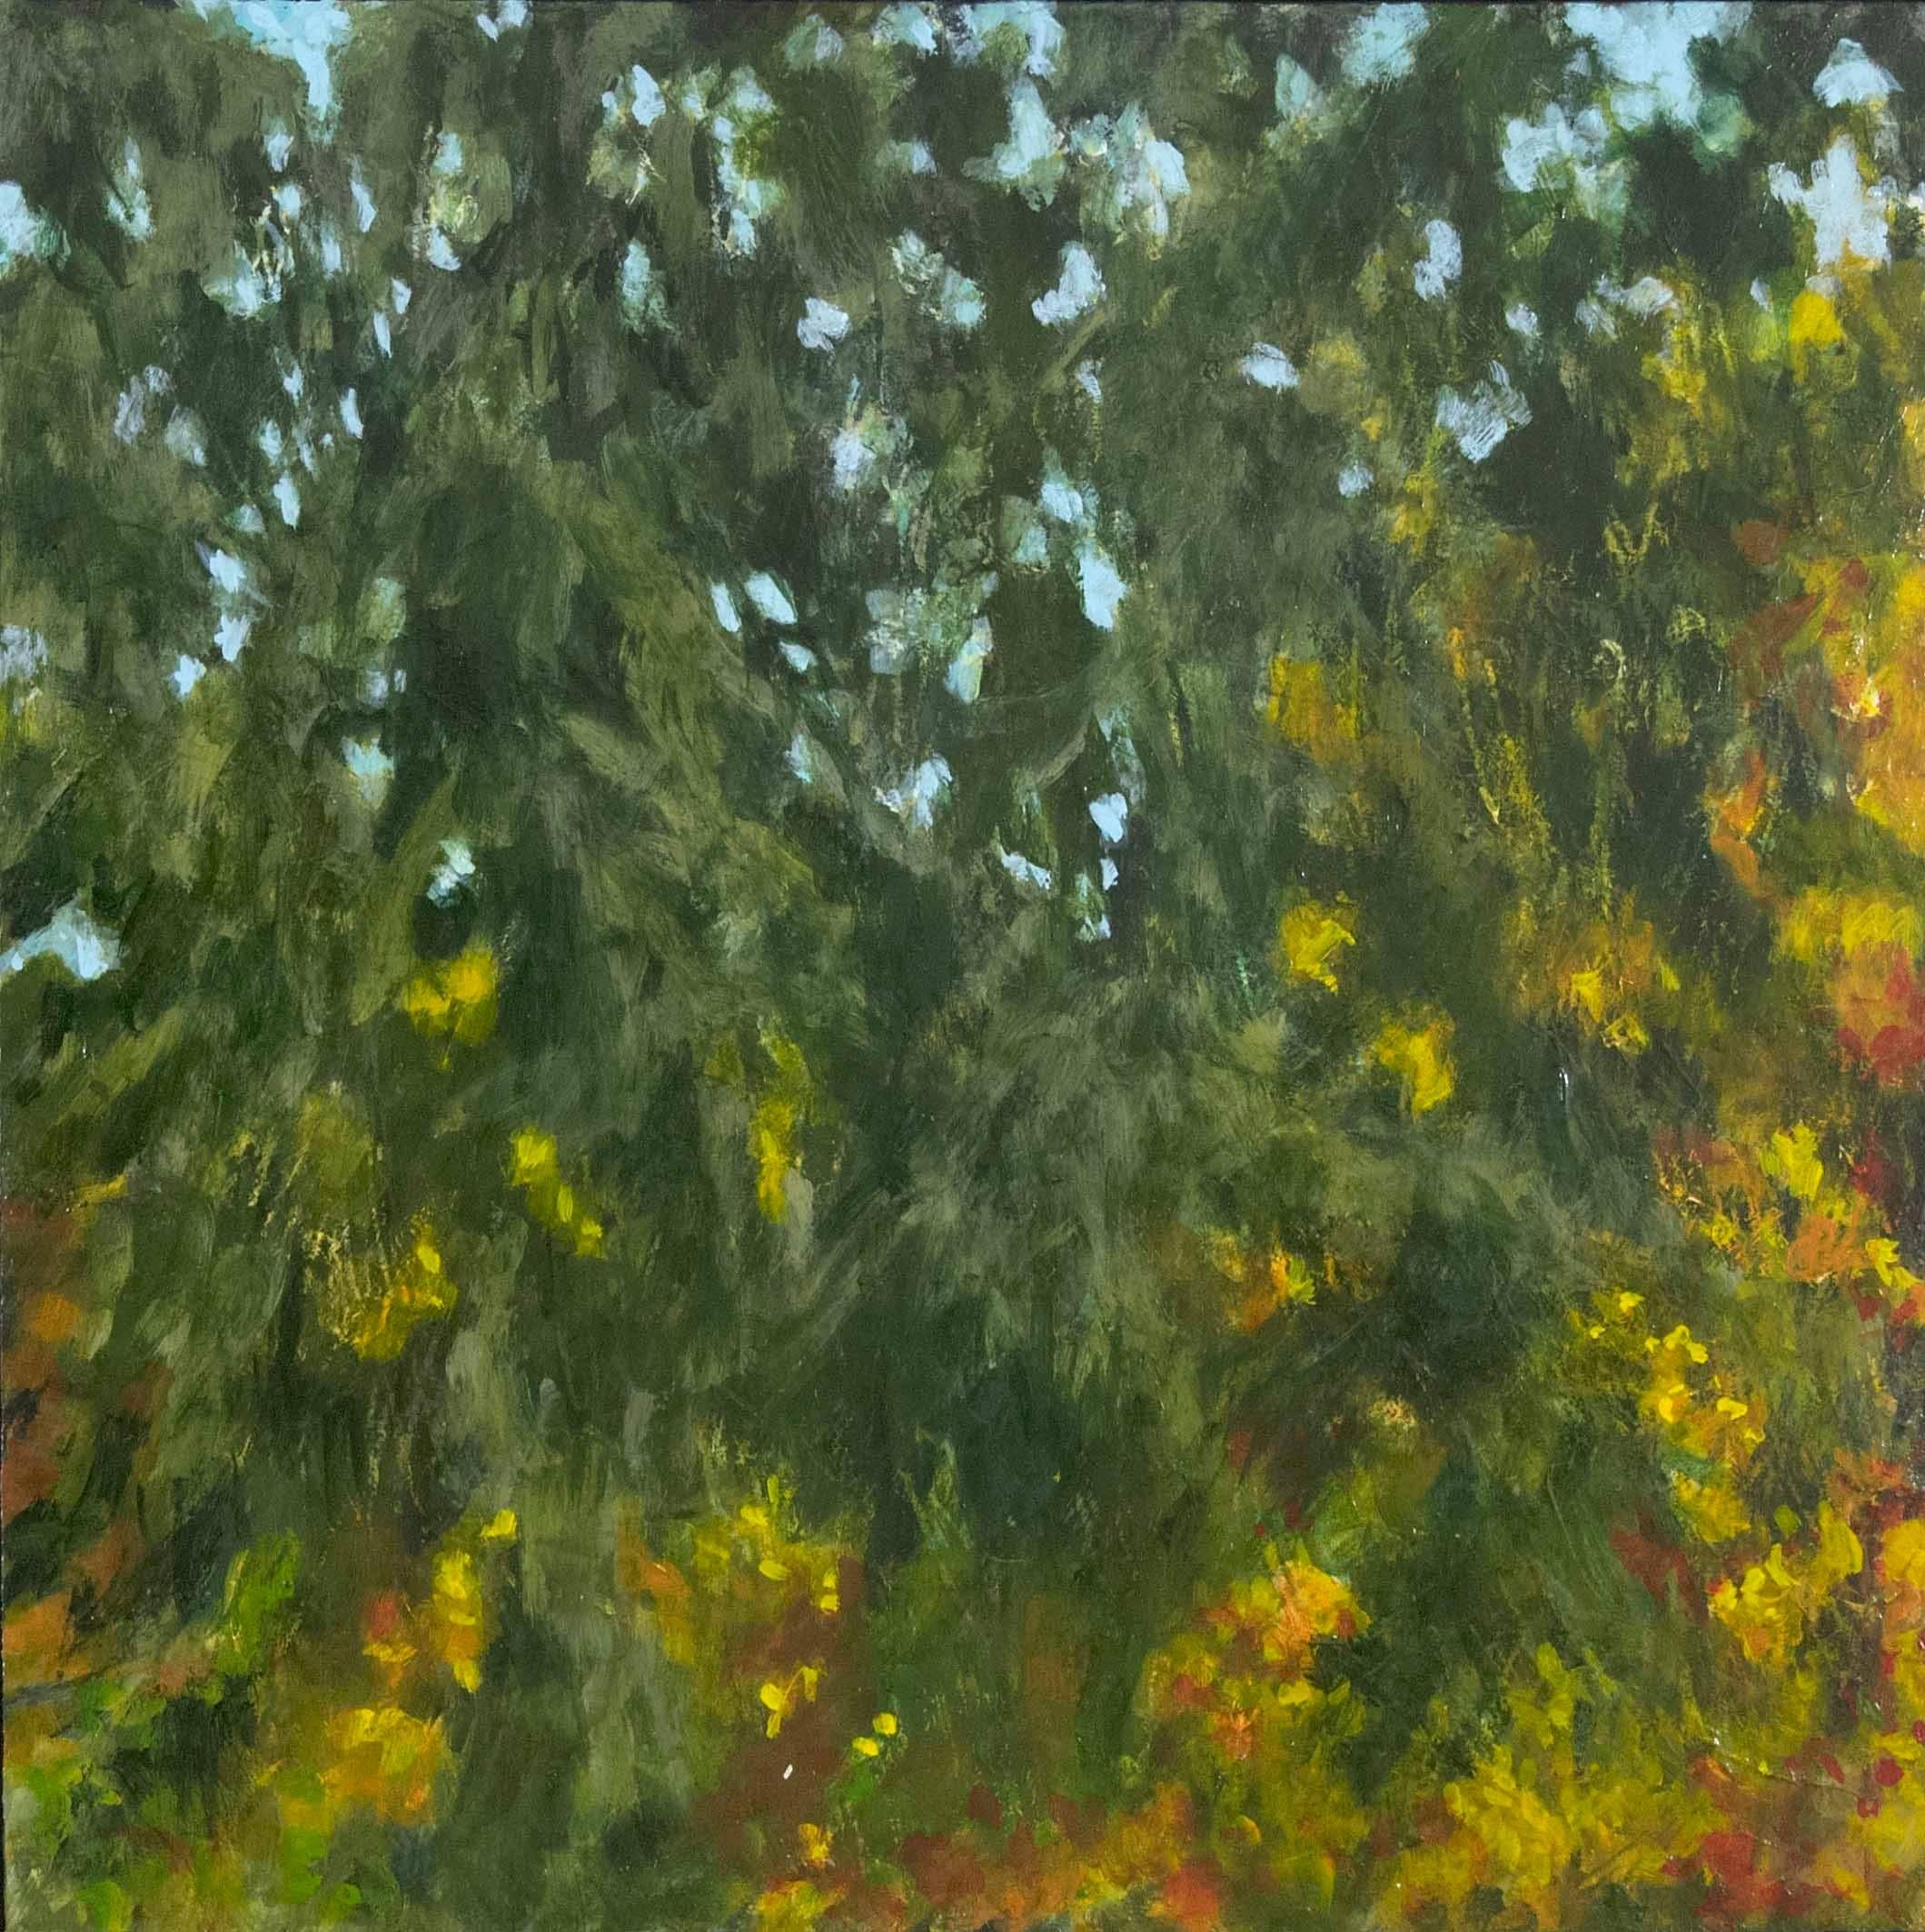 Abstract Painting Cheryl Clinton - "Impossible Blue 2", peinture abstraite, paysage, vert-de-gris, rouge, acrylique